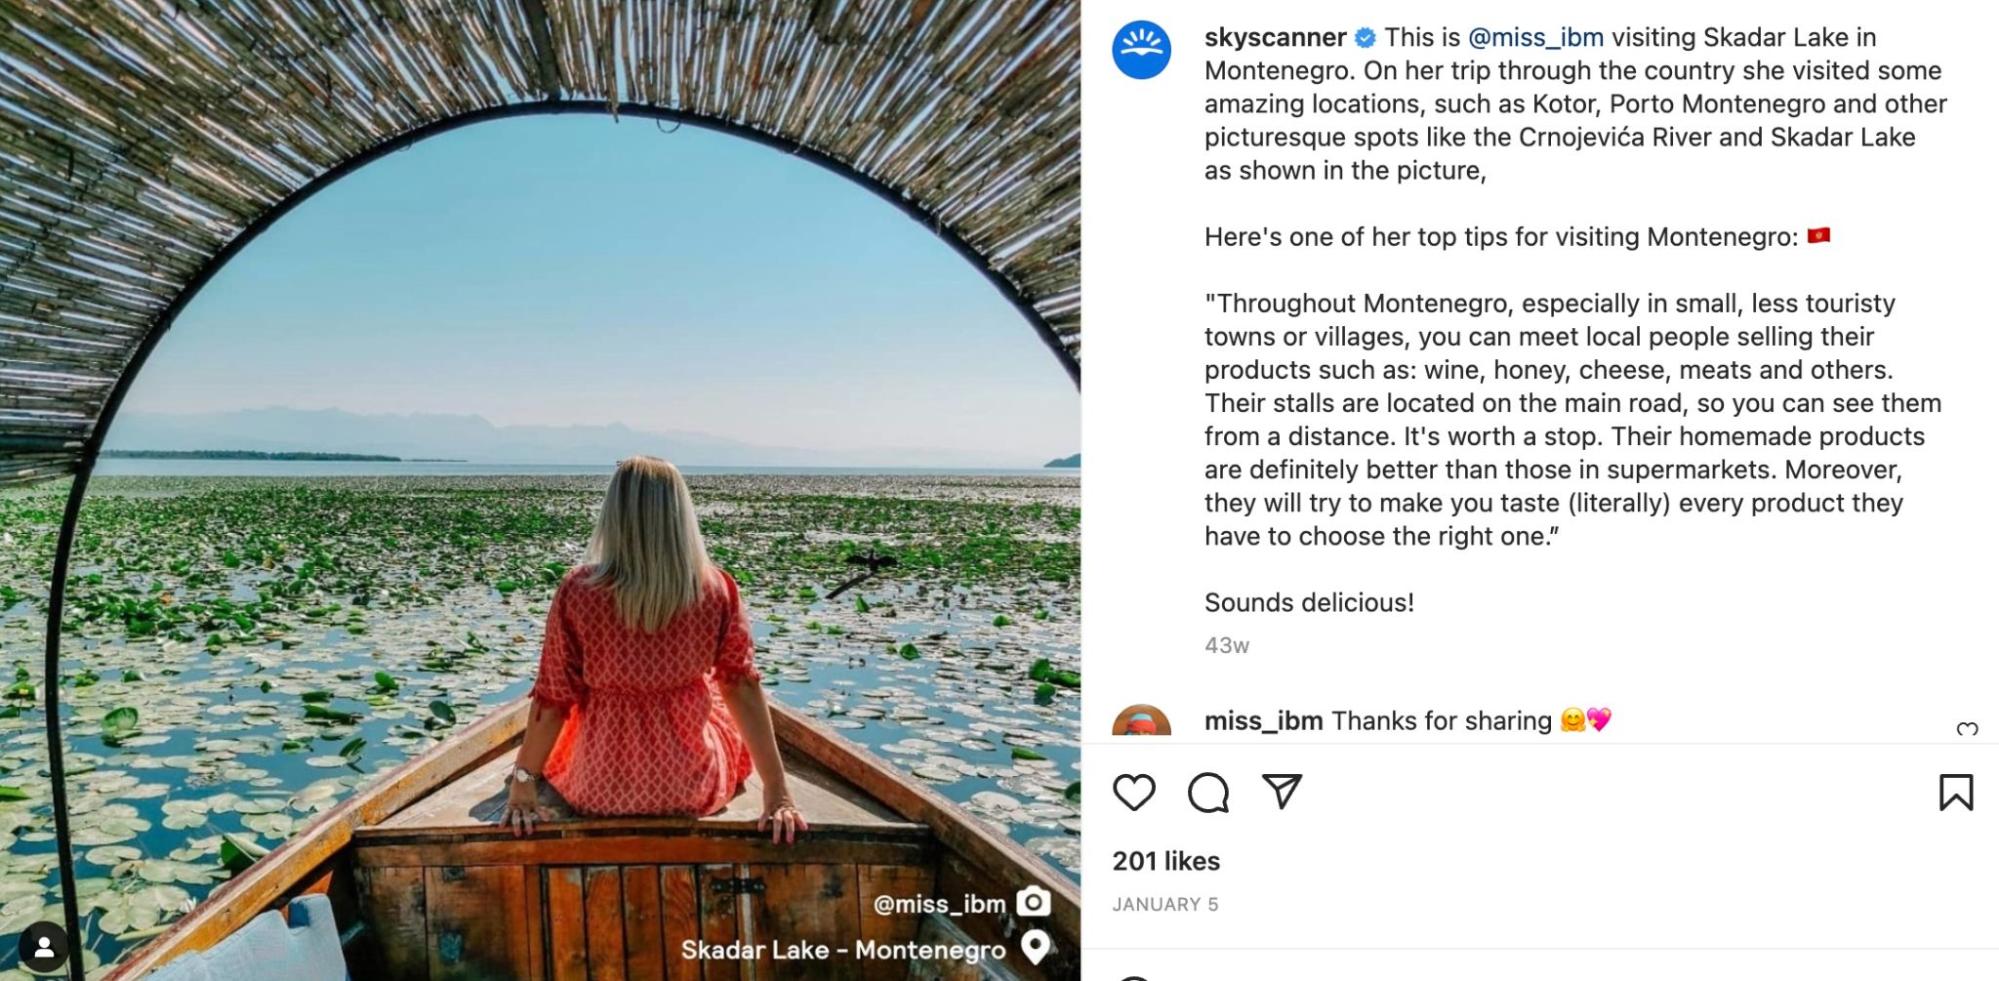 สกรีนช็อตของโพสต์ Instagram ของ Skyscanner เป็นภาพผู้หญิงกำลังนั่งอยู่บนเรือในมอนเตเนโกร